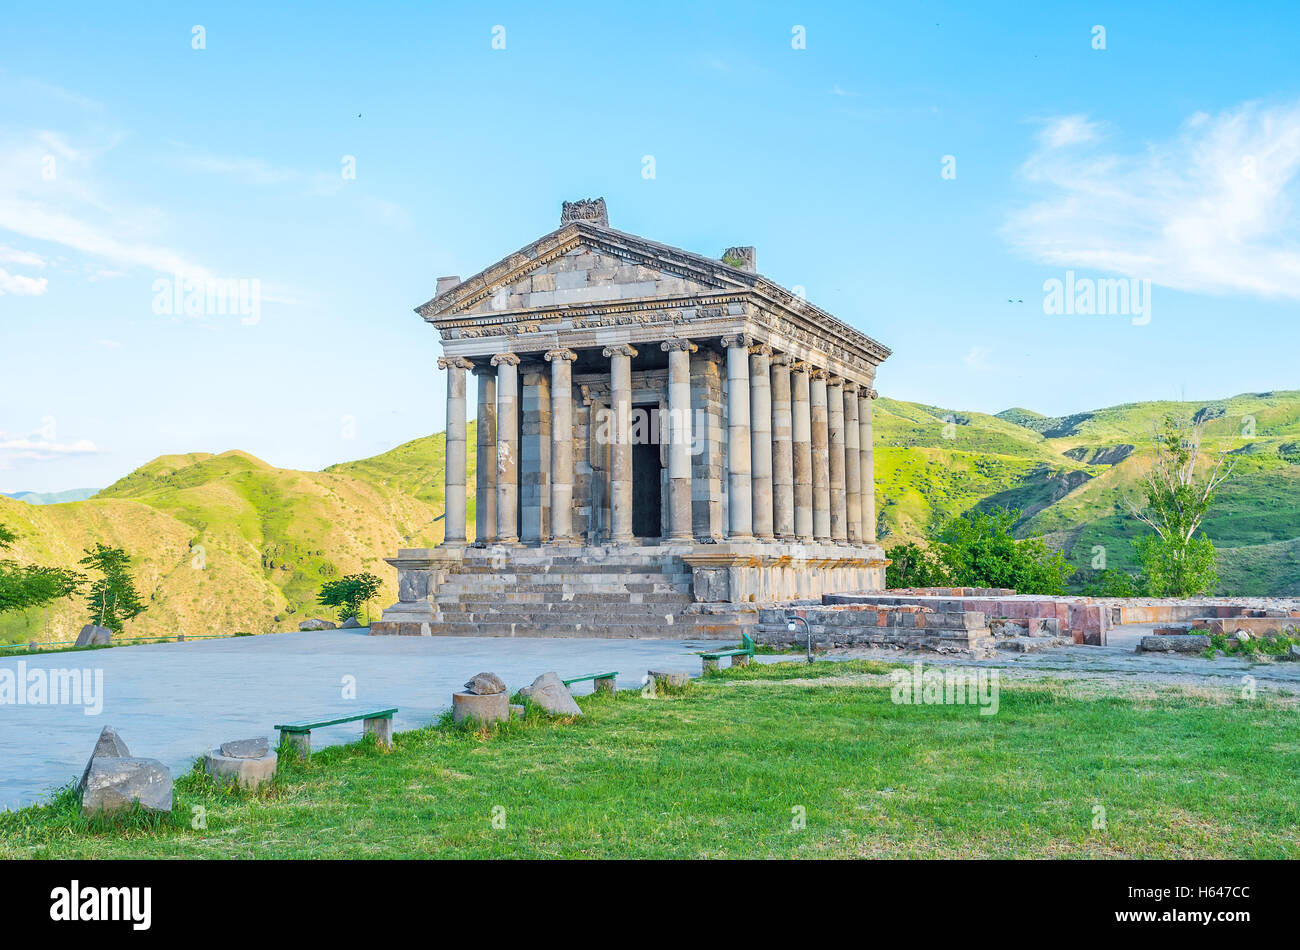 Il Tempio di Garni è il perfetto esempio di greco antico e di architettura romana, che si trova nella provincia di Kotayk, Armenia. Foto Stock